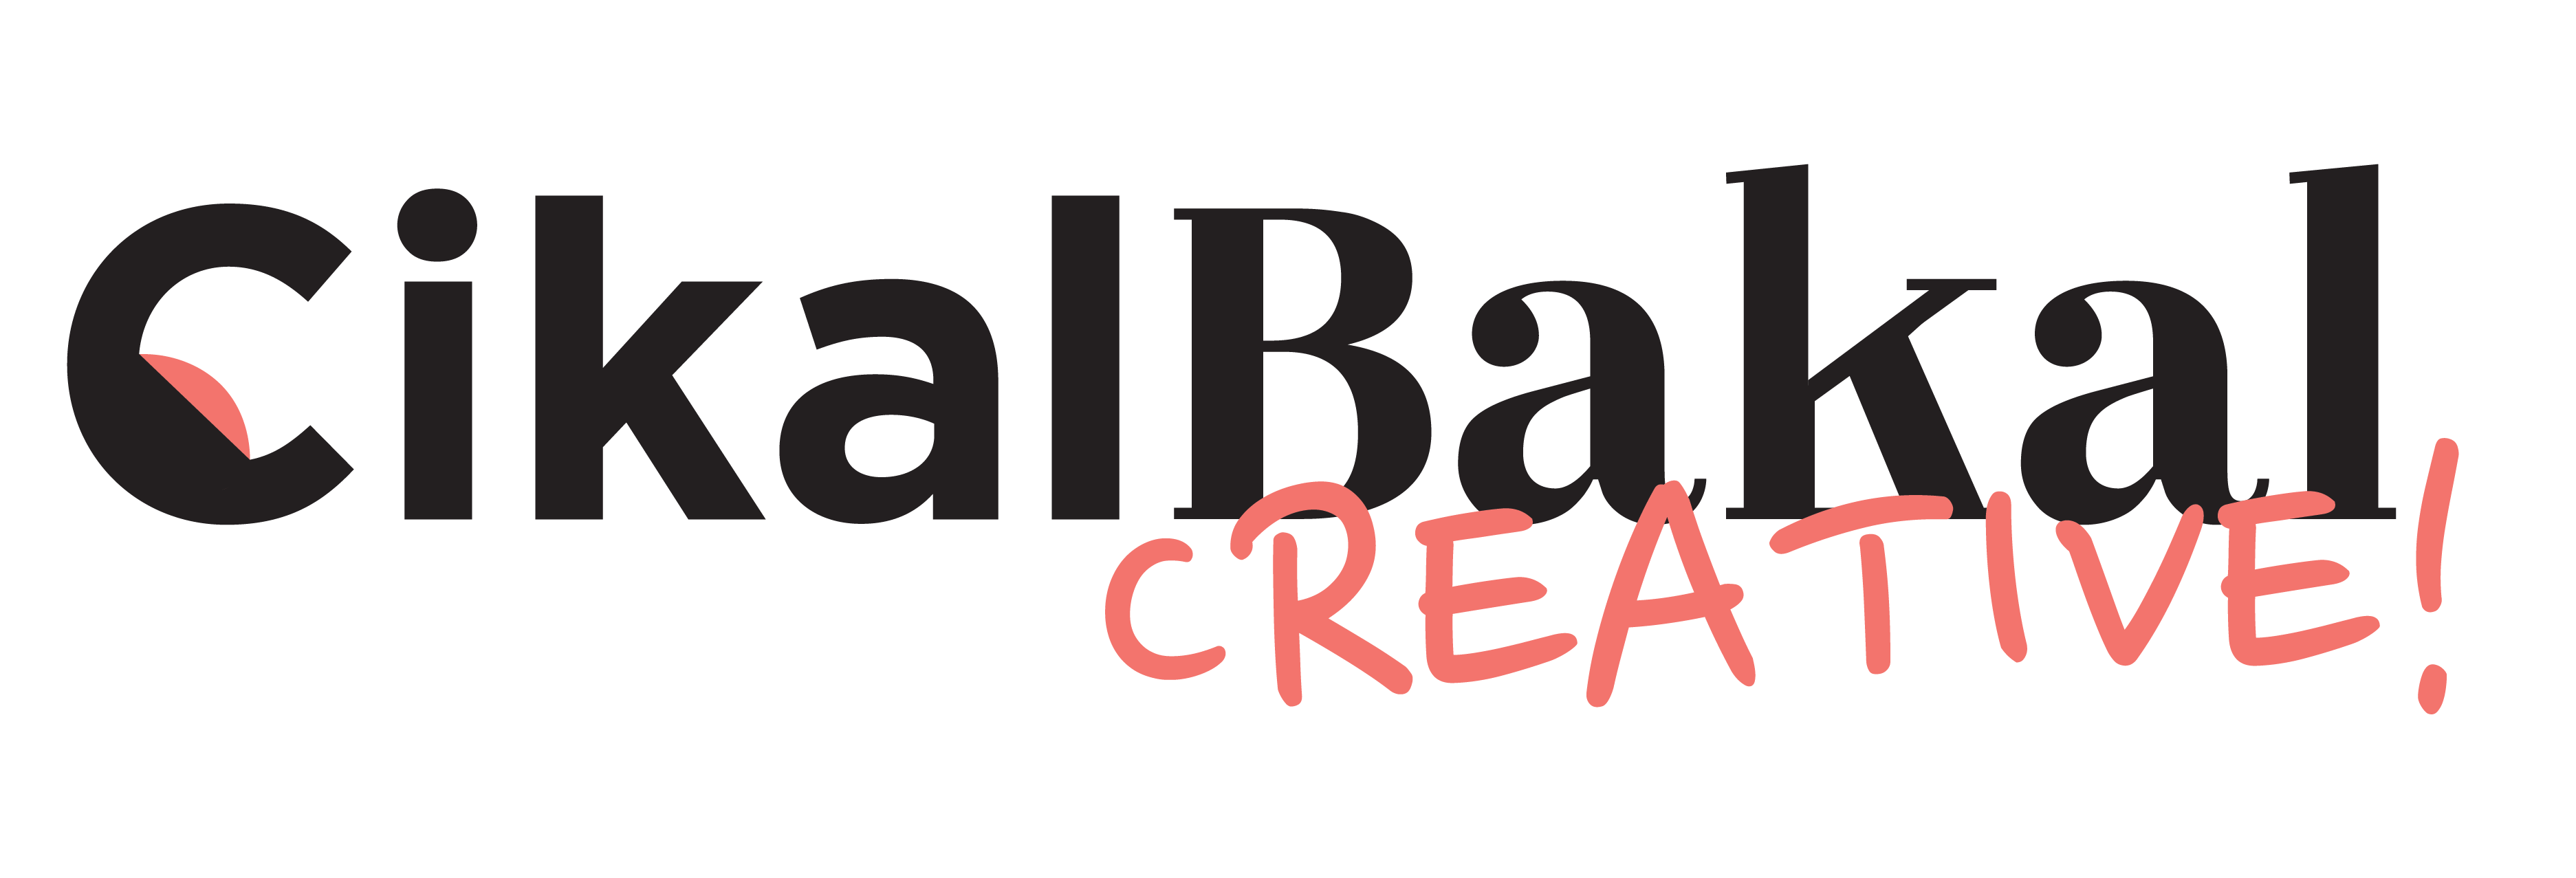 CikalBakal Creative